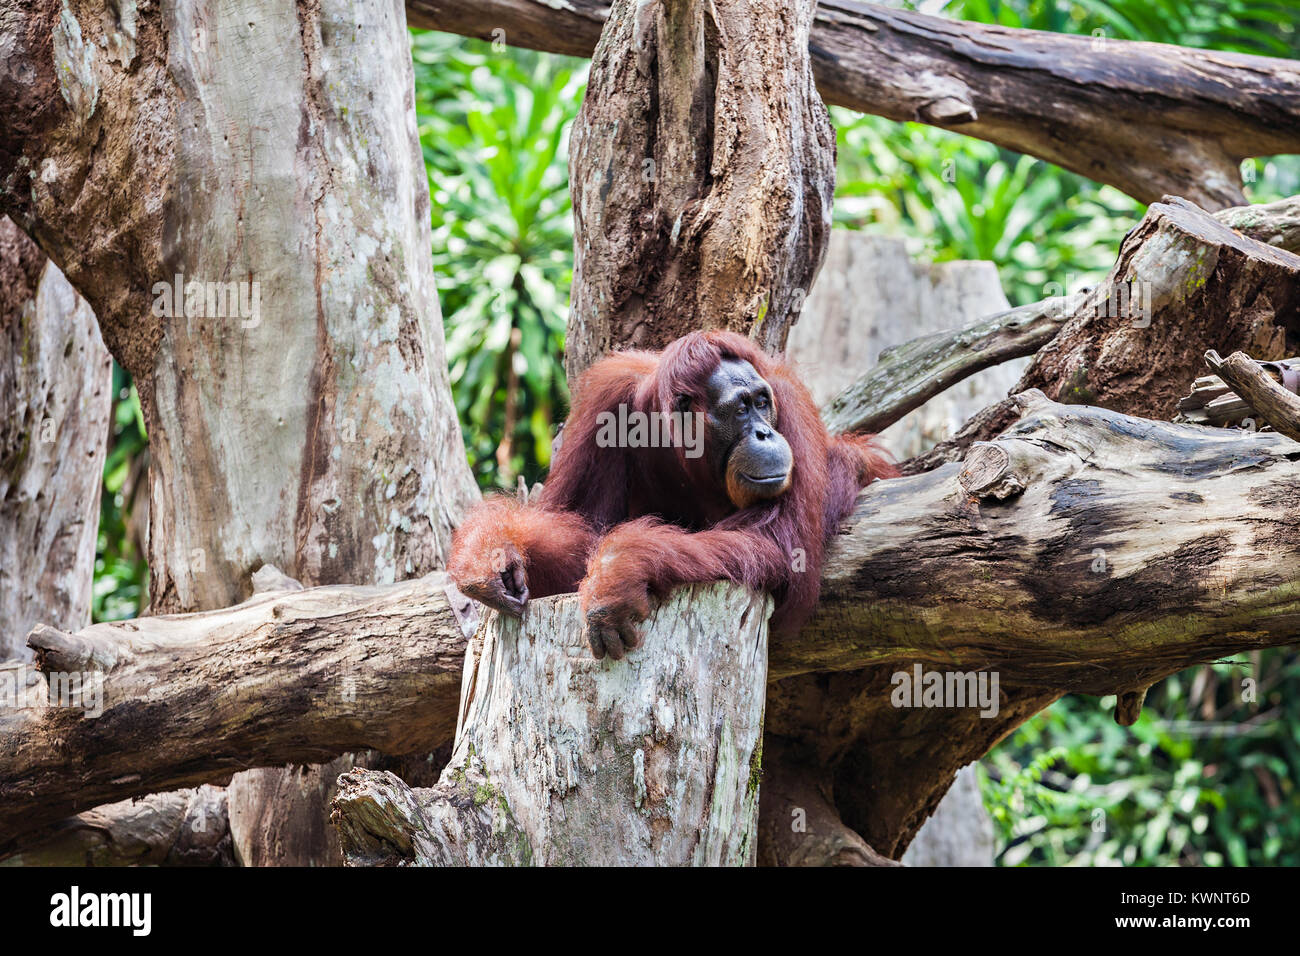 Los orangutanes son exclusivamente las dos especies asiáticas de grandes simios existentes Foto de stock